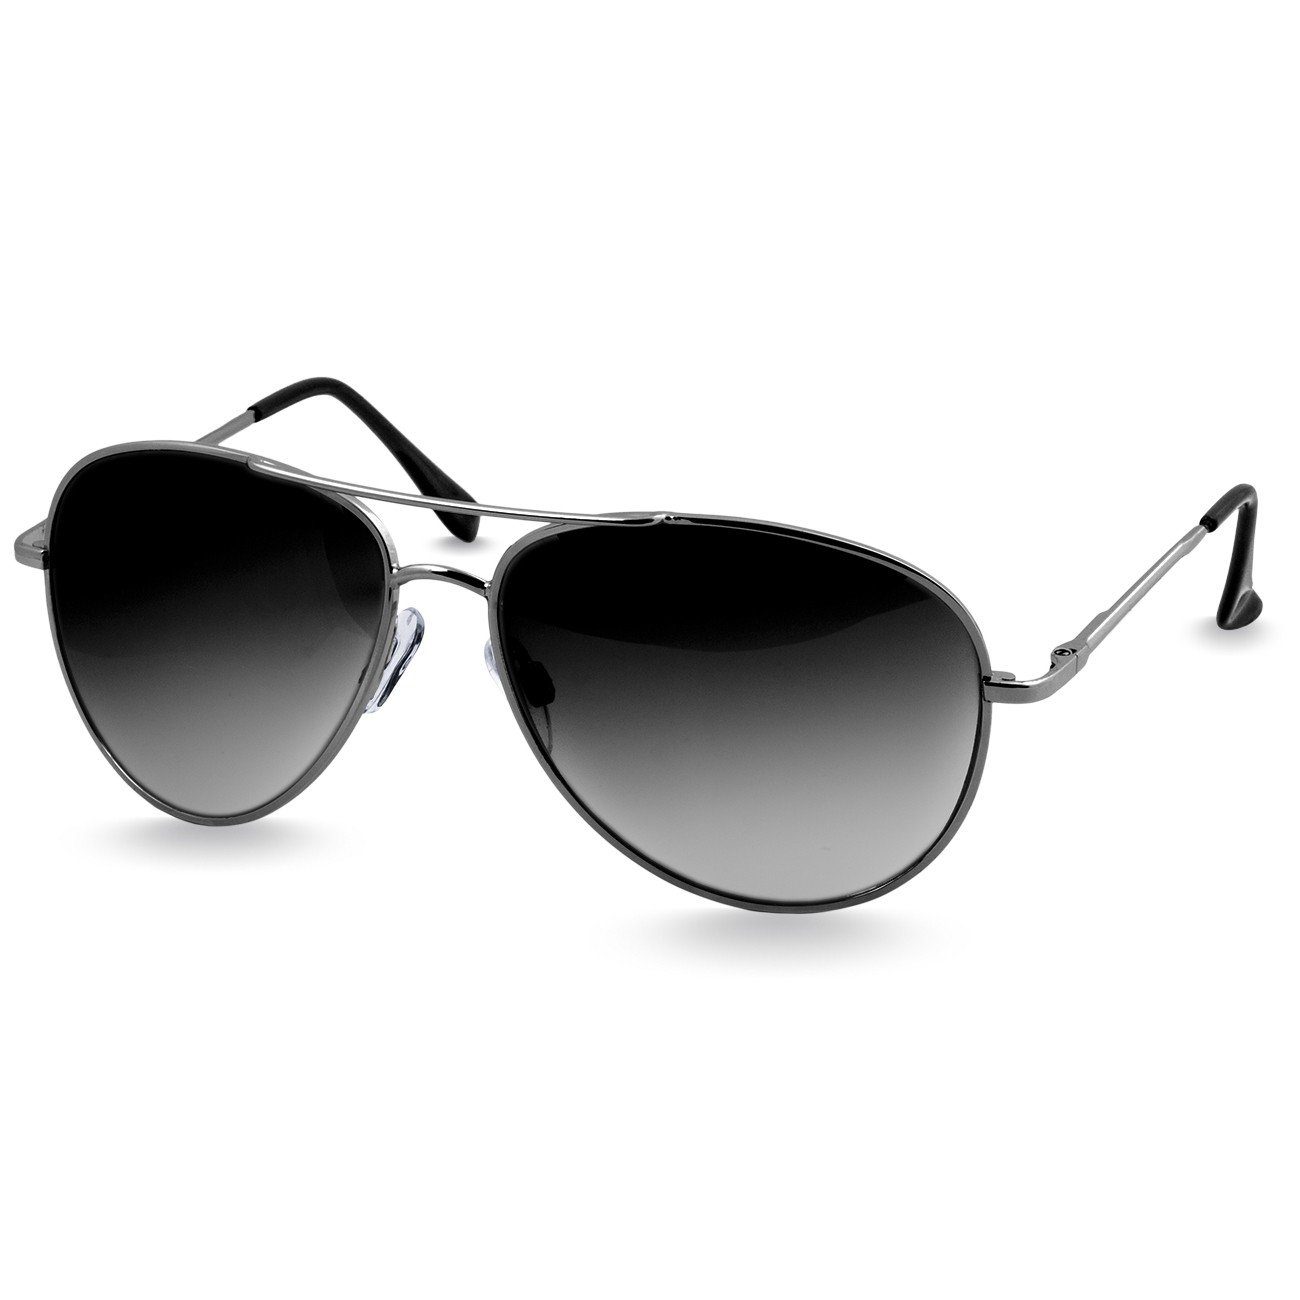 Caspar Sonnenbrille SG013 klassische Unisex Retro Pilotenbrille silber / schwarz getönt